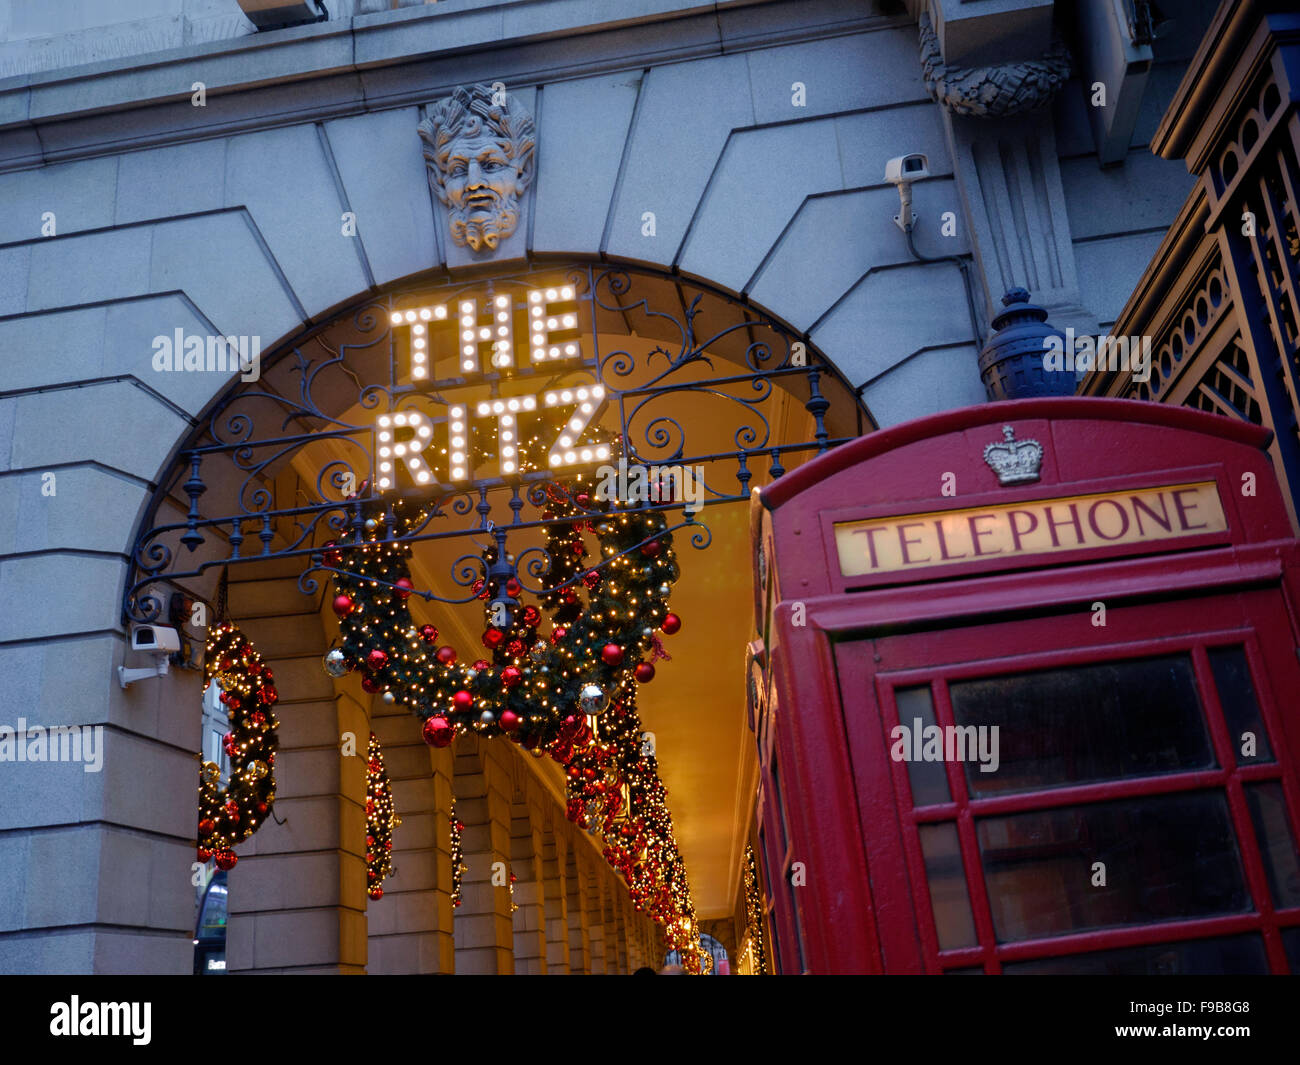 Décorations de Noël l'Hôtel Ritz Téléphone rouge London Piccadilly Boîte à Noël avec des cabines téléphoniques rouges en premier plan London UK Banque D'Images